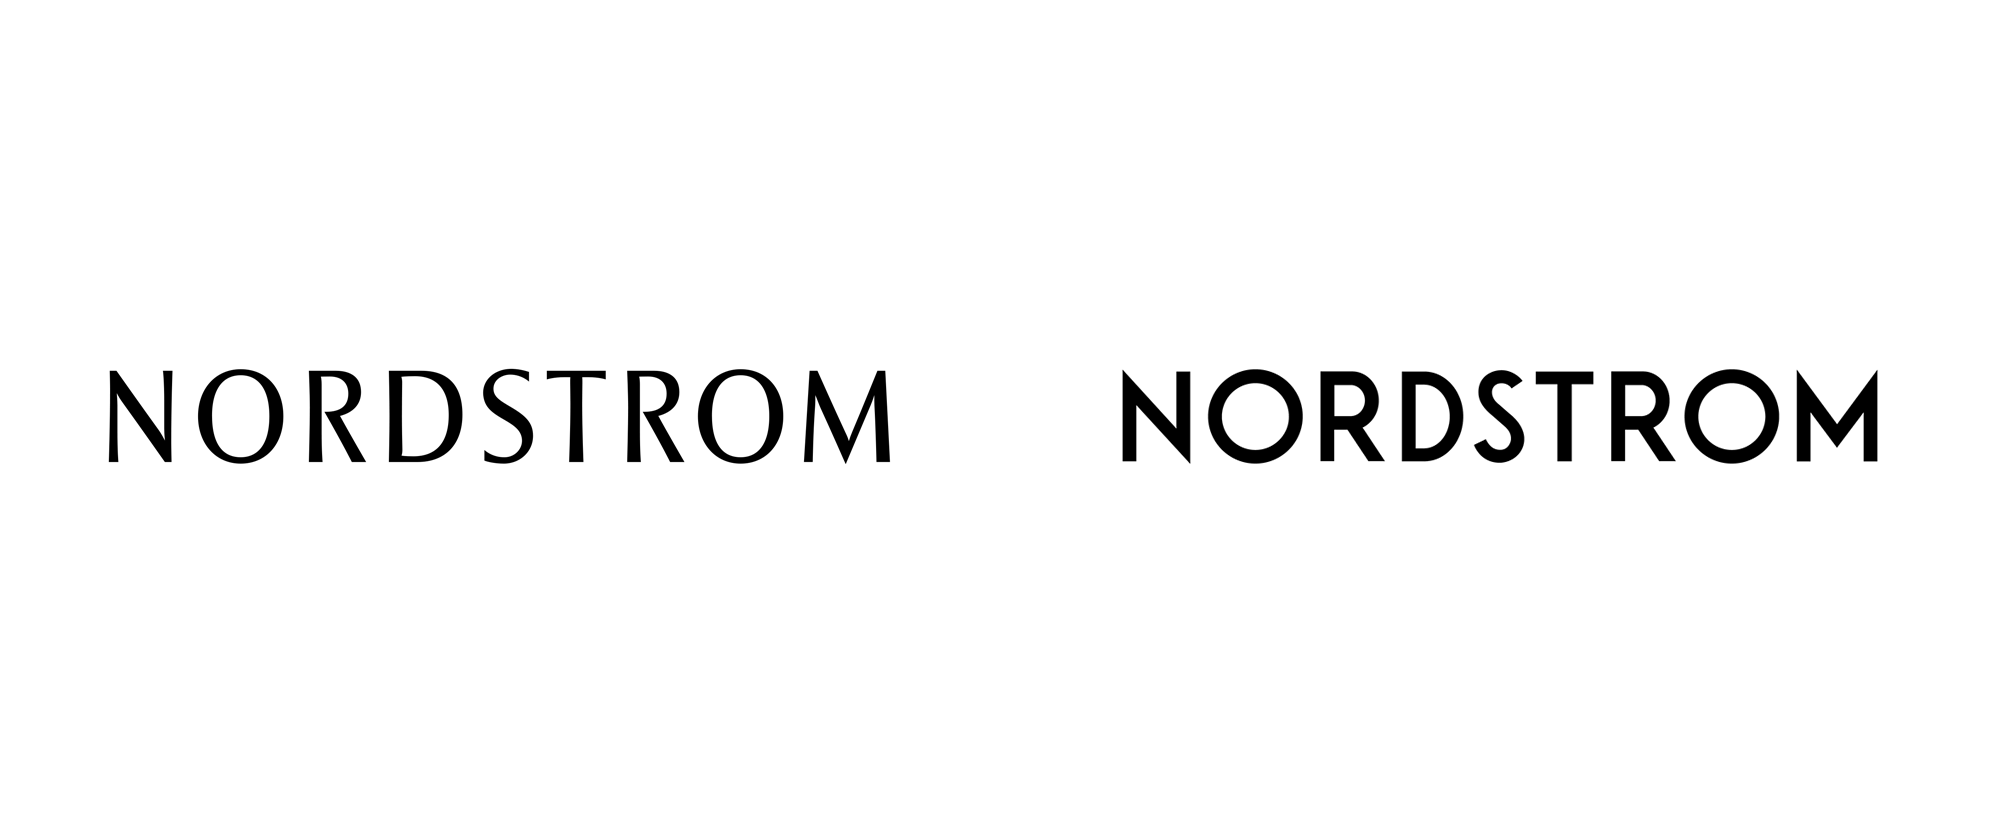 时尚零售商诺德斯特龙公司logo设计